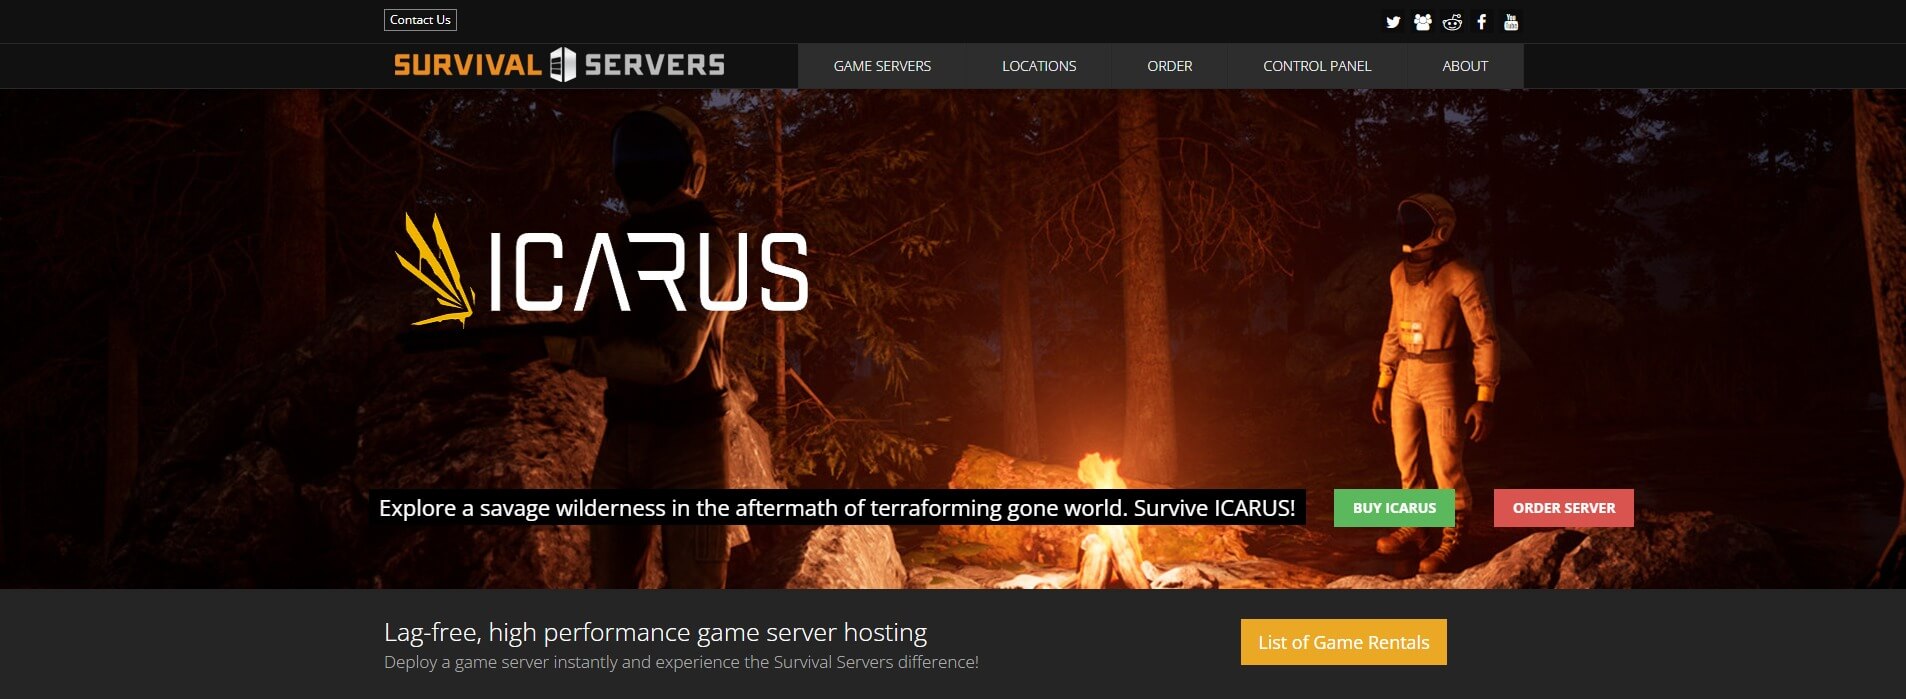 Game-Server-Hosting-Survival-Servers